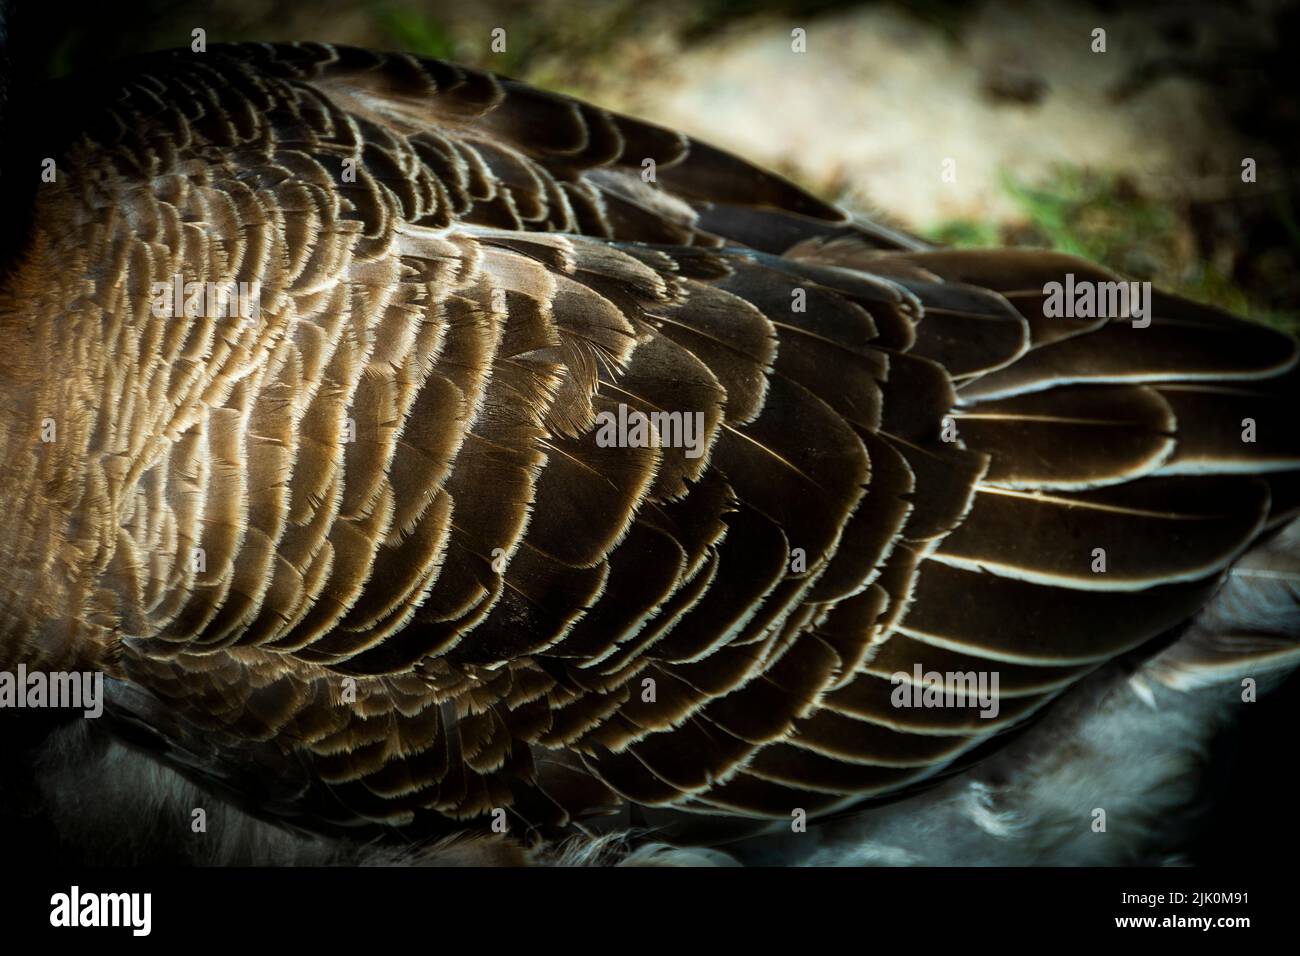 Primer plano del cuerpo de un pájaro cubierto de plumas marrones con bordes blancos Foto de stock